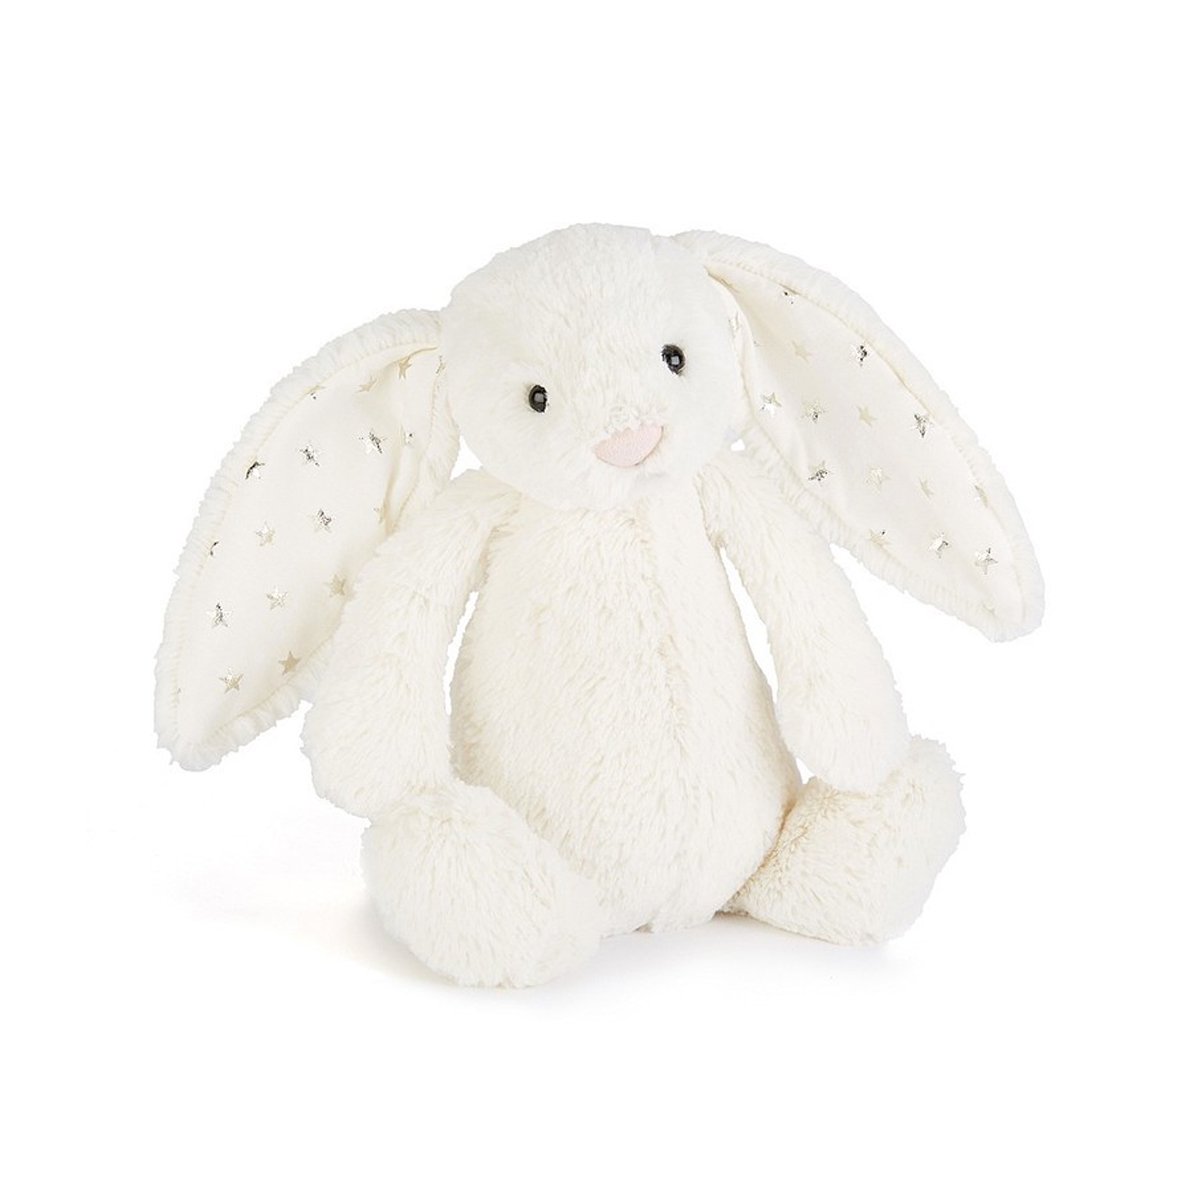 Bashful Twinkle Bunny Mサイズ Jellycat ジェリーキャット - おしゃれなパーティーグッズの通販サイト【niccori】